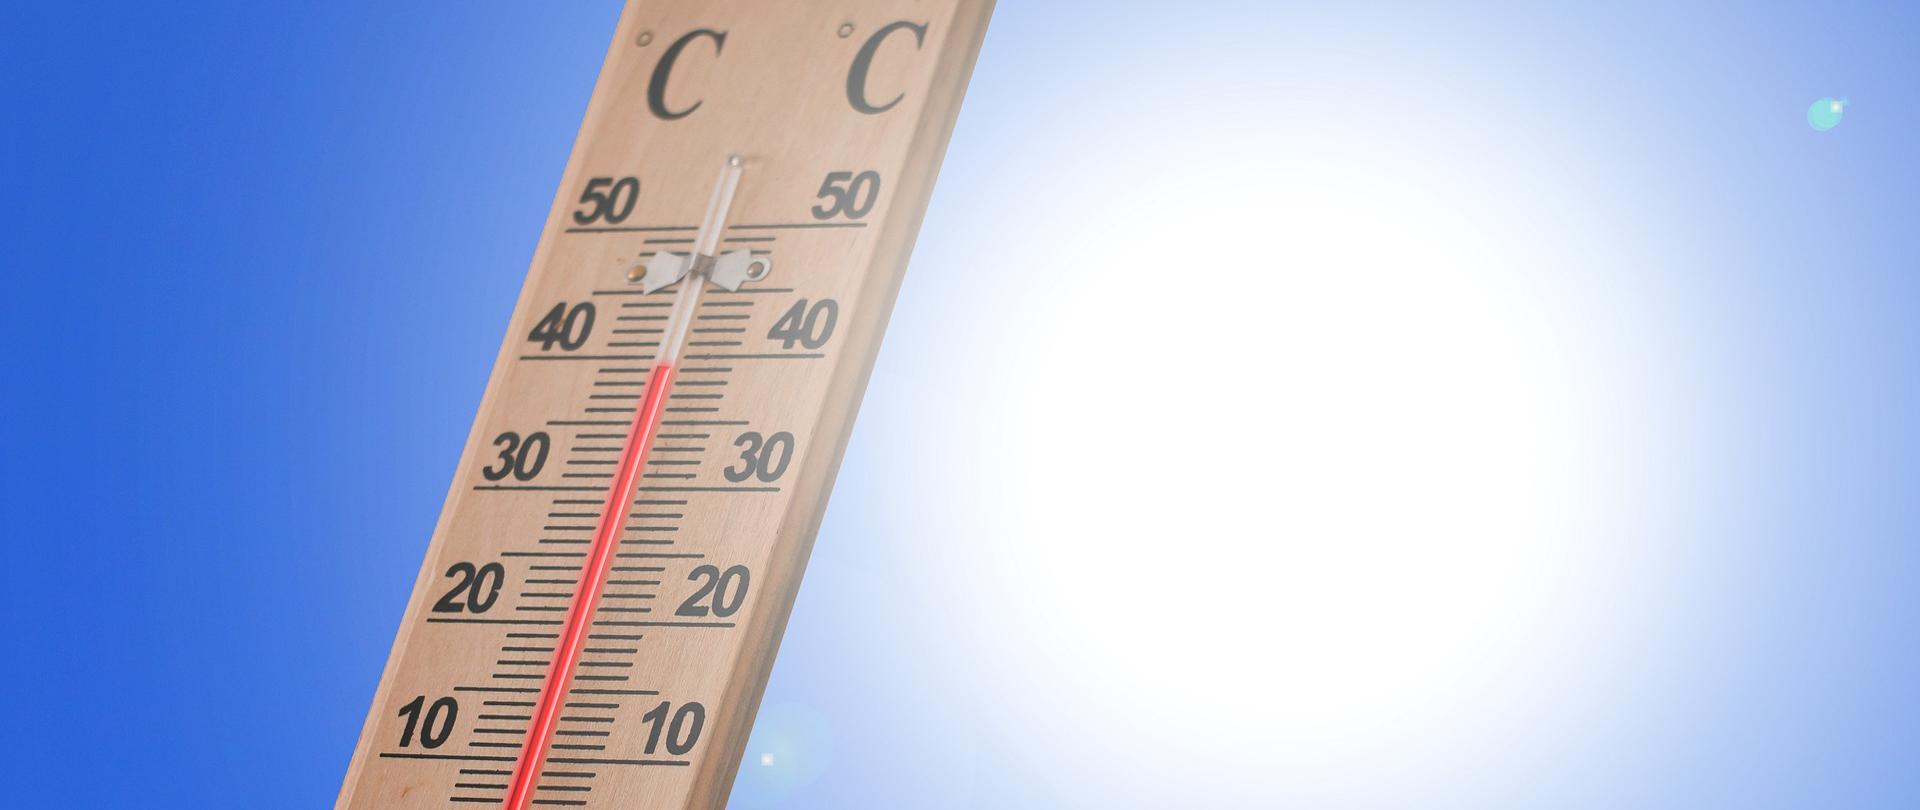 Na zdjęciu znajduje się termometr ścienny pokazujący temperaturę 40 stopni Celsjusza. W tle widać pogodne, słoneczne niebo. 